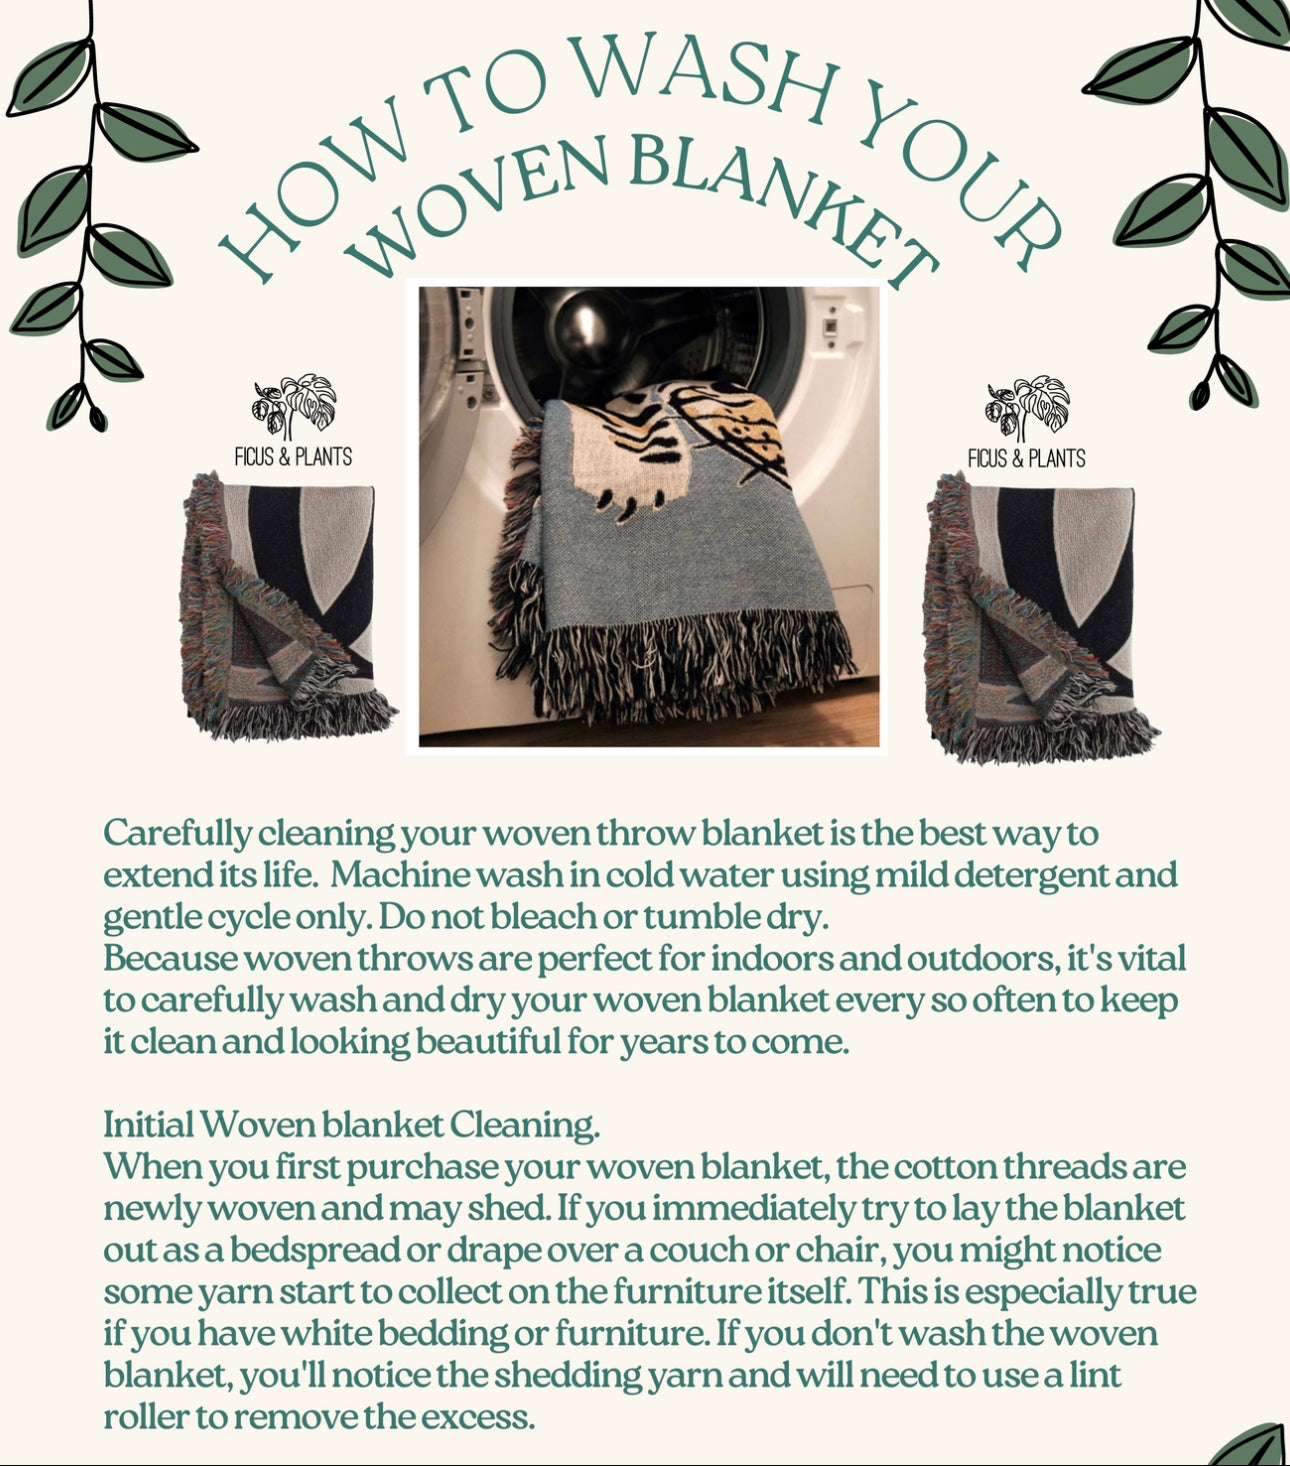 Botanical Woven Blanket For Her. Birthday Gift For Plant Lady, Botanist, Gardener Or Mother.